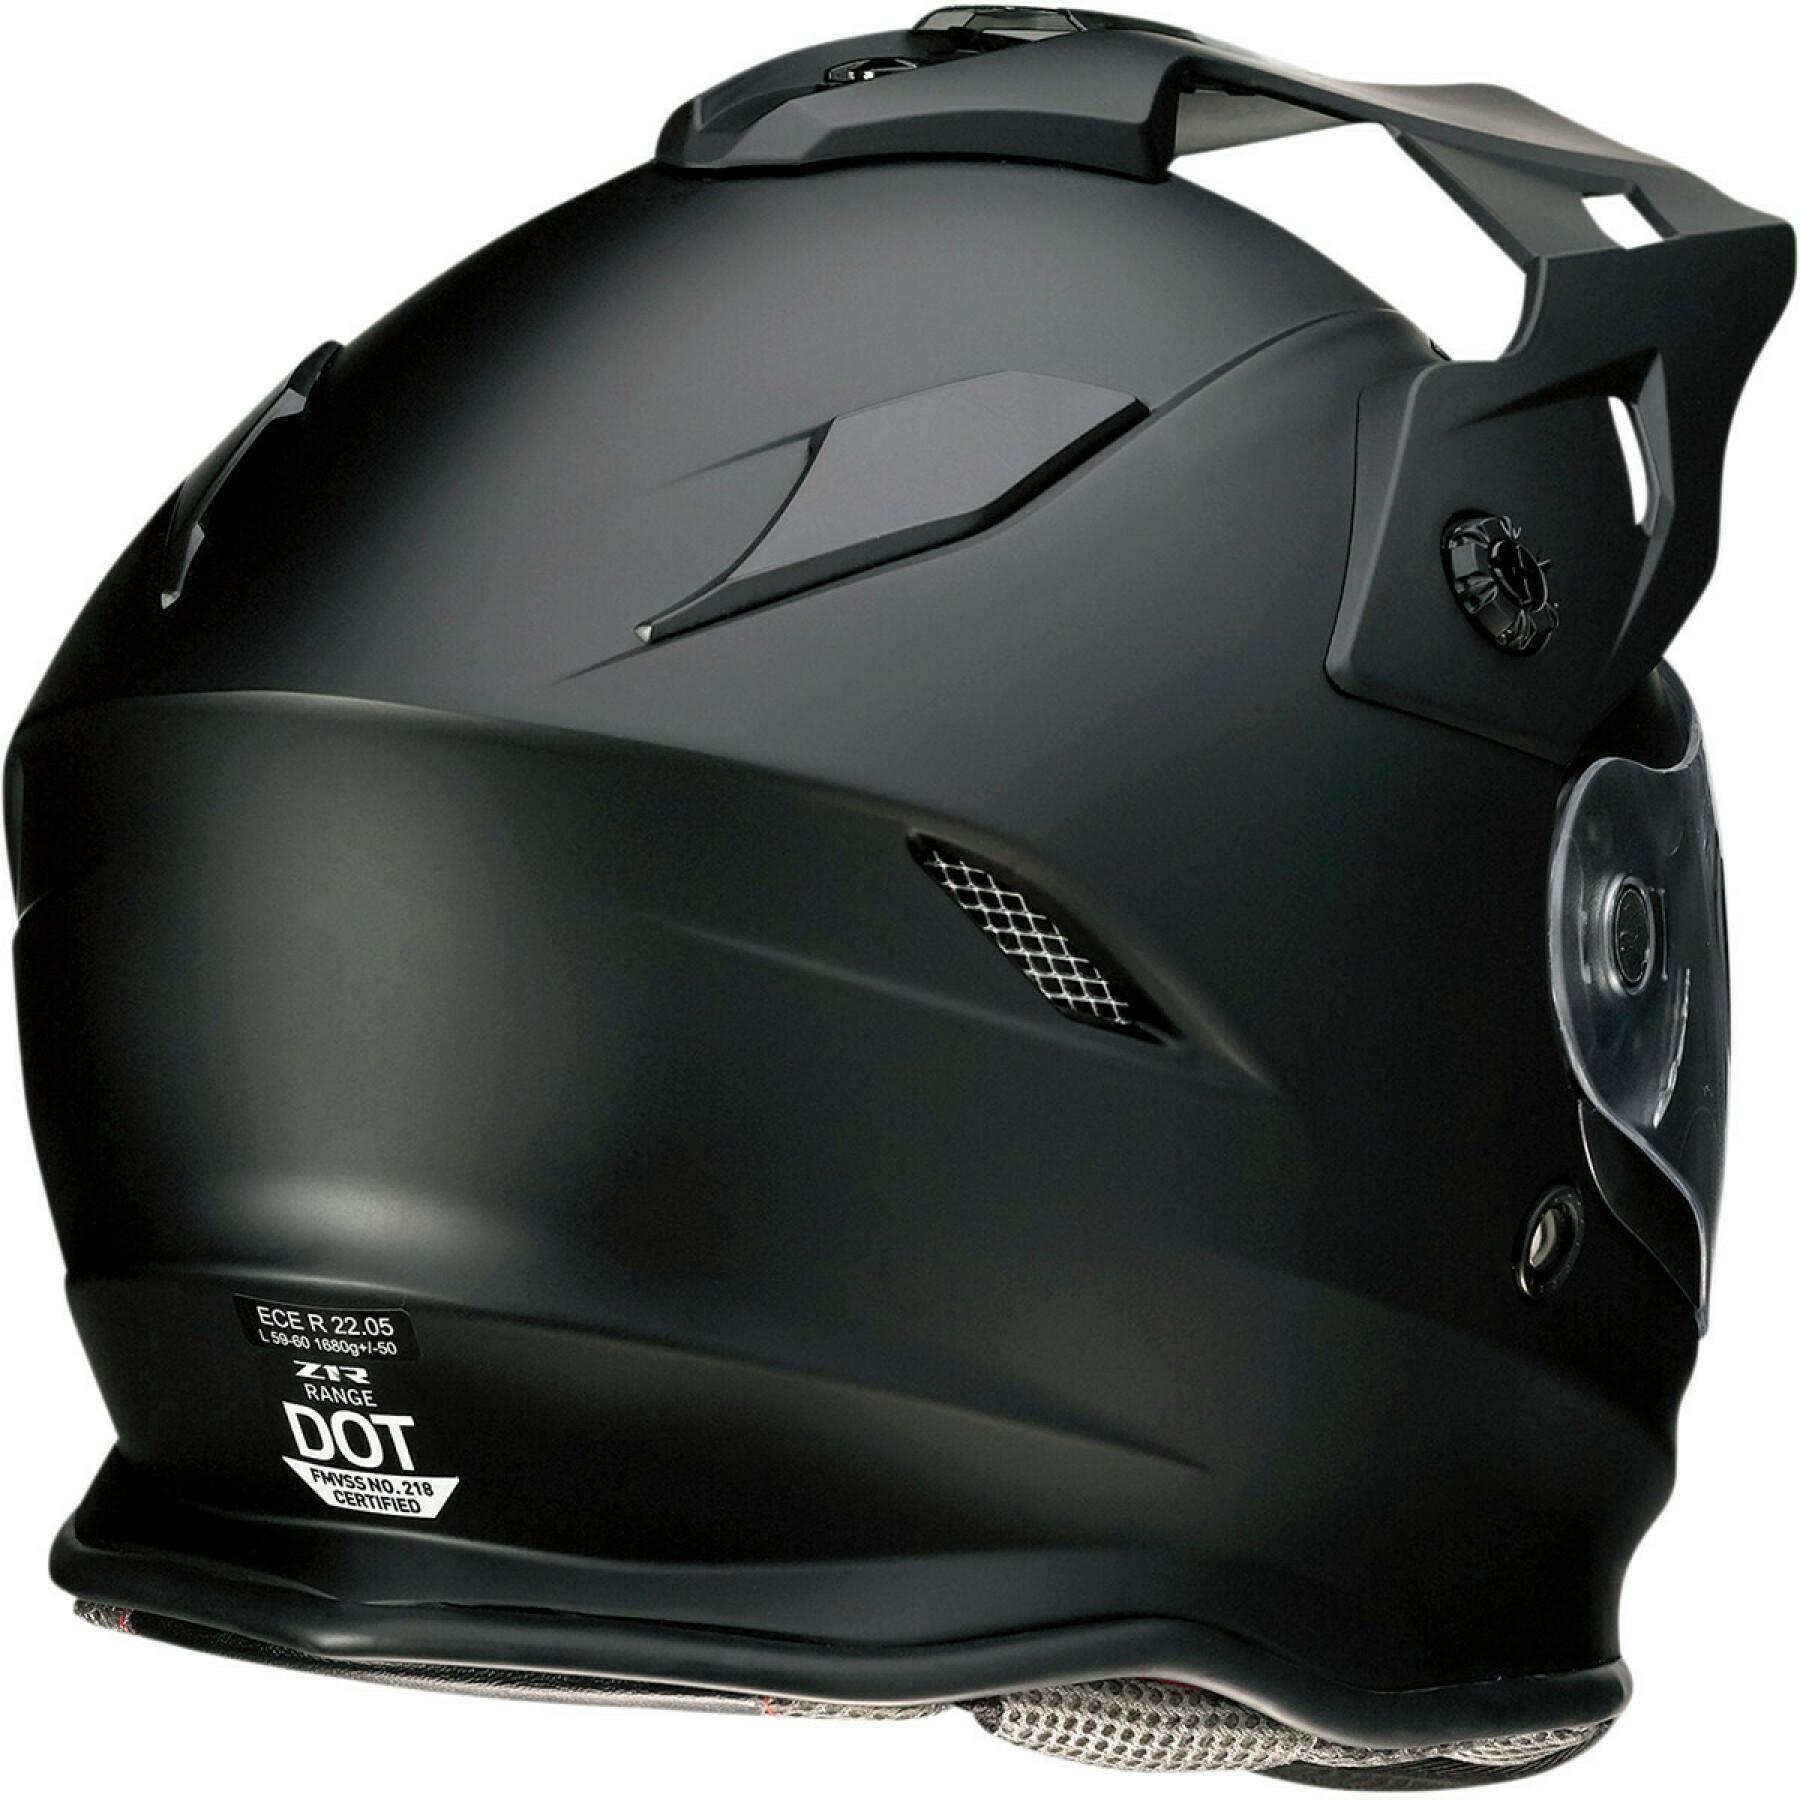 Modular motorcycle helmet Z1R range flt black